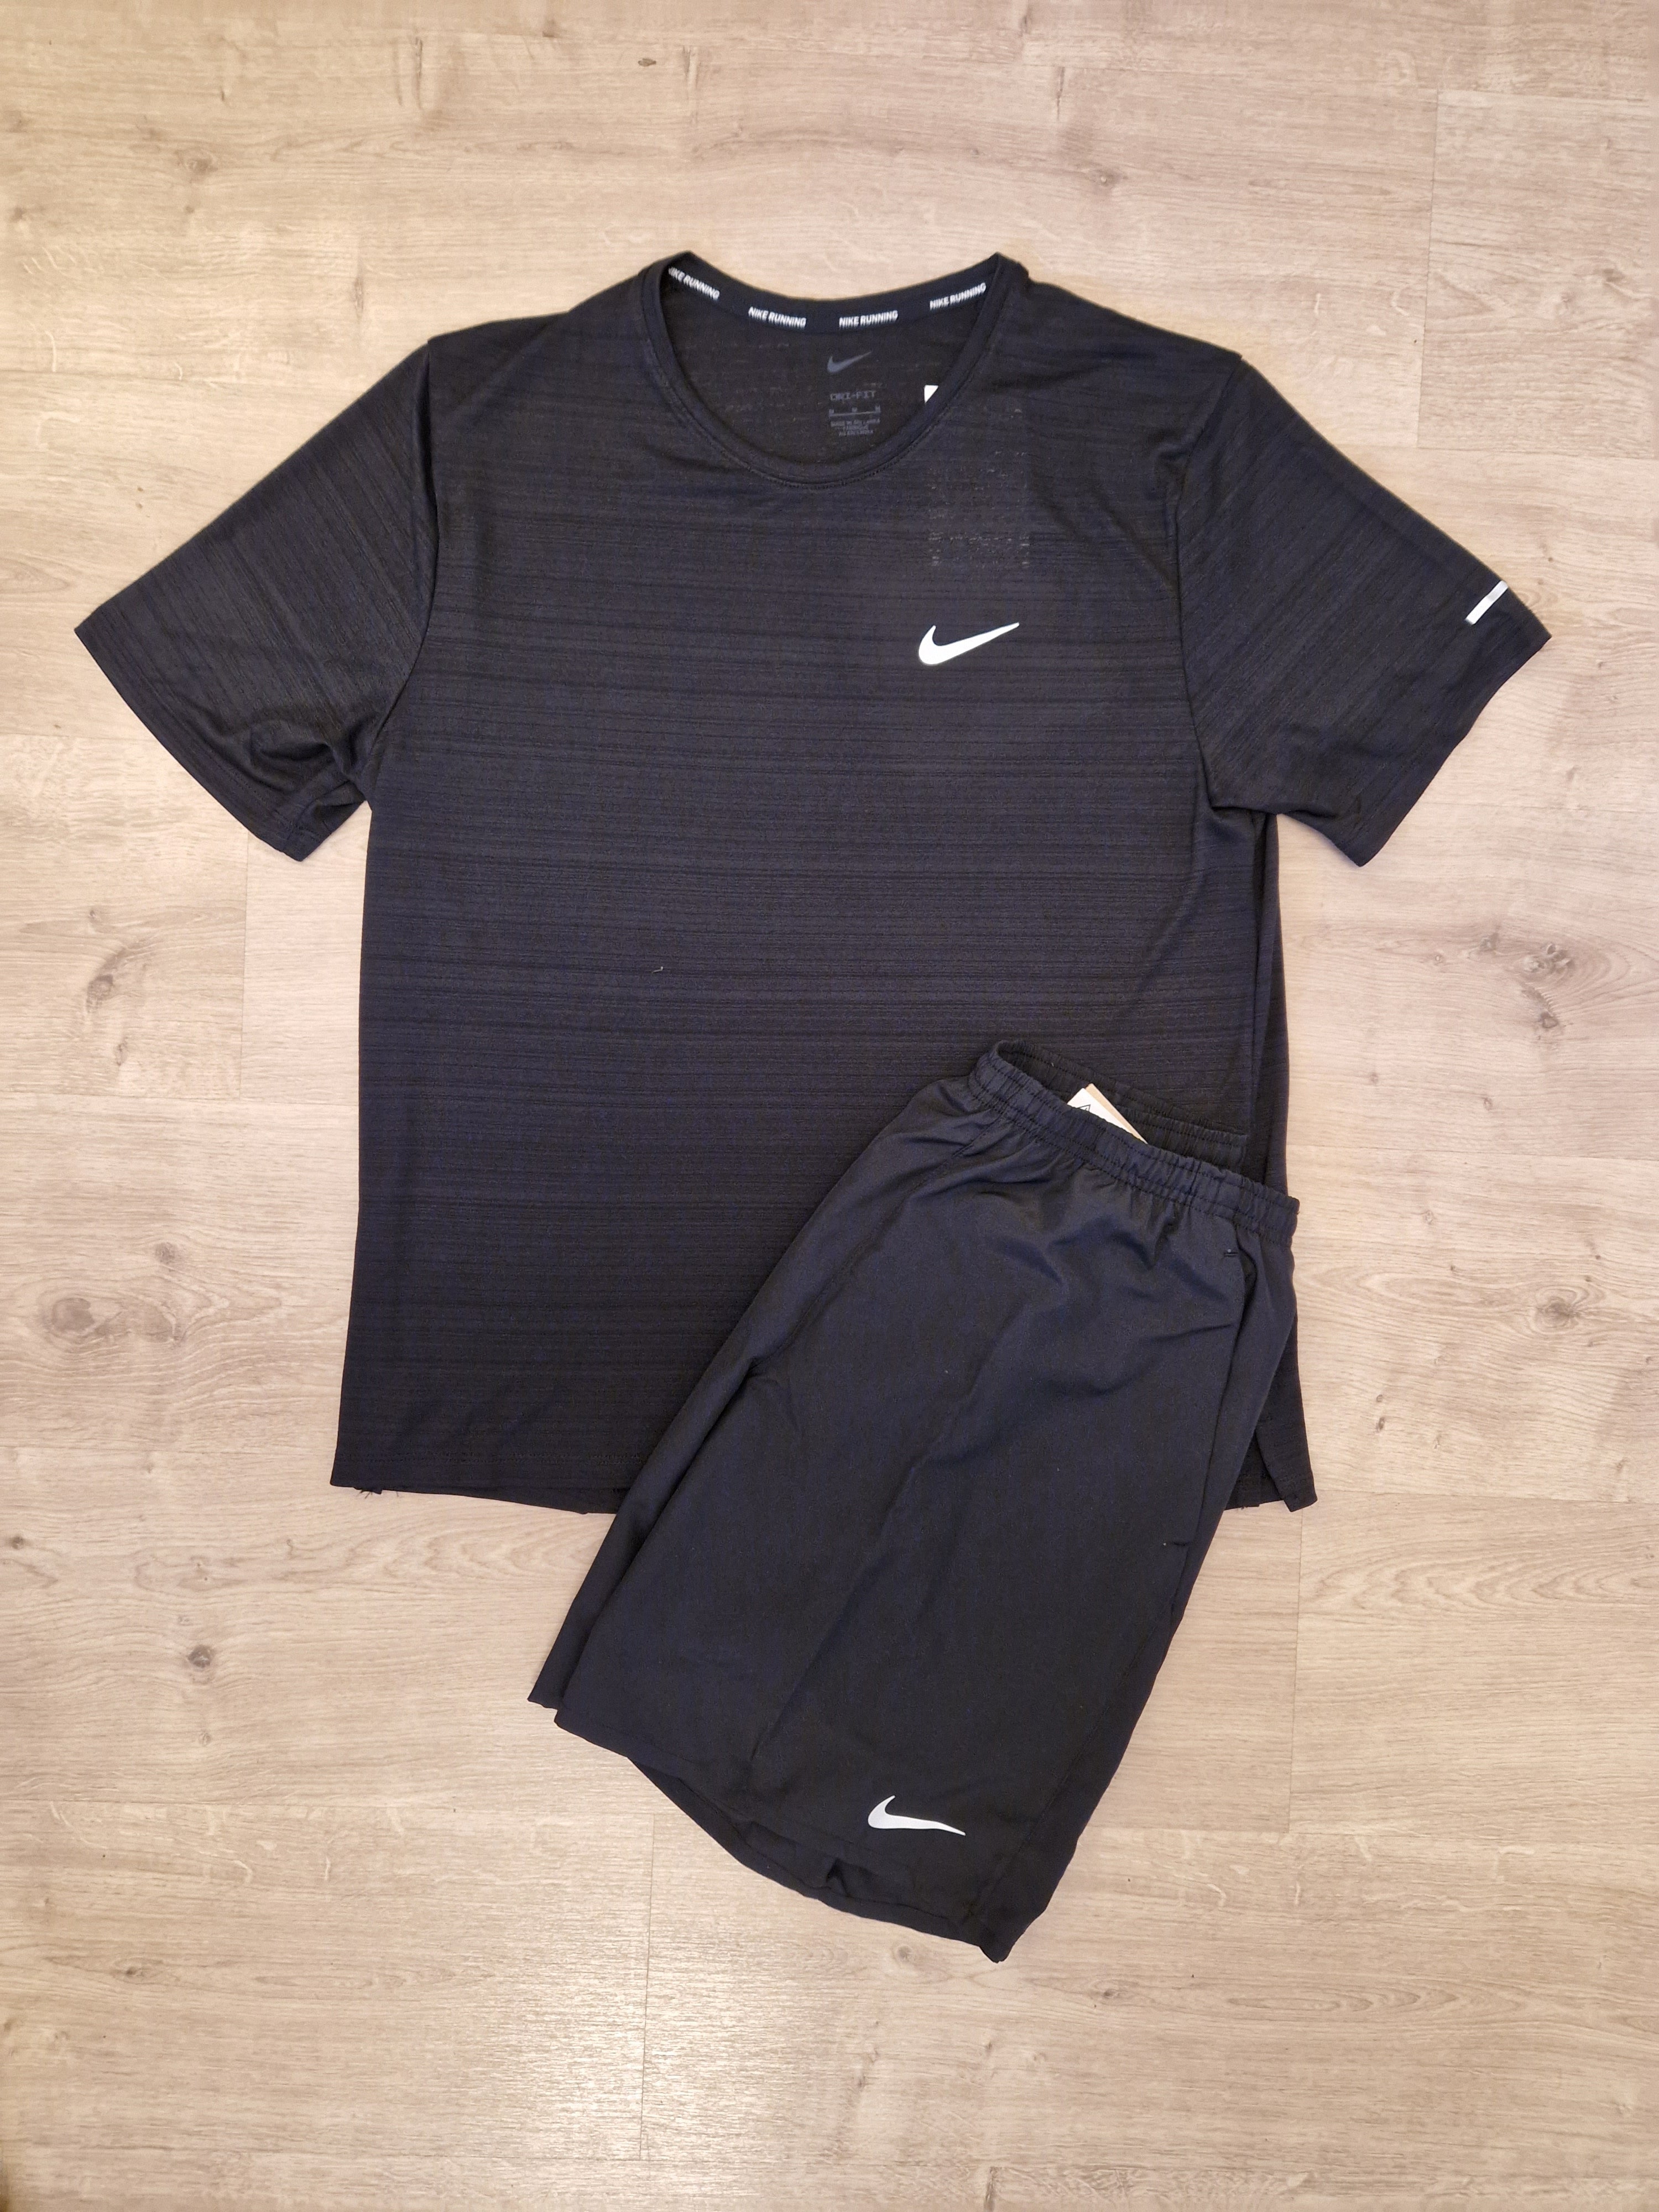 Nike Dri Fit Shorts Set Black